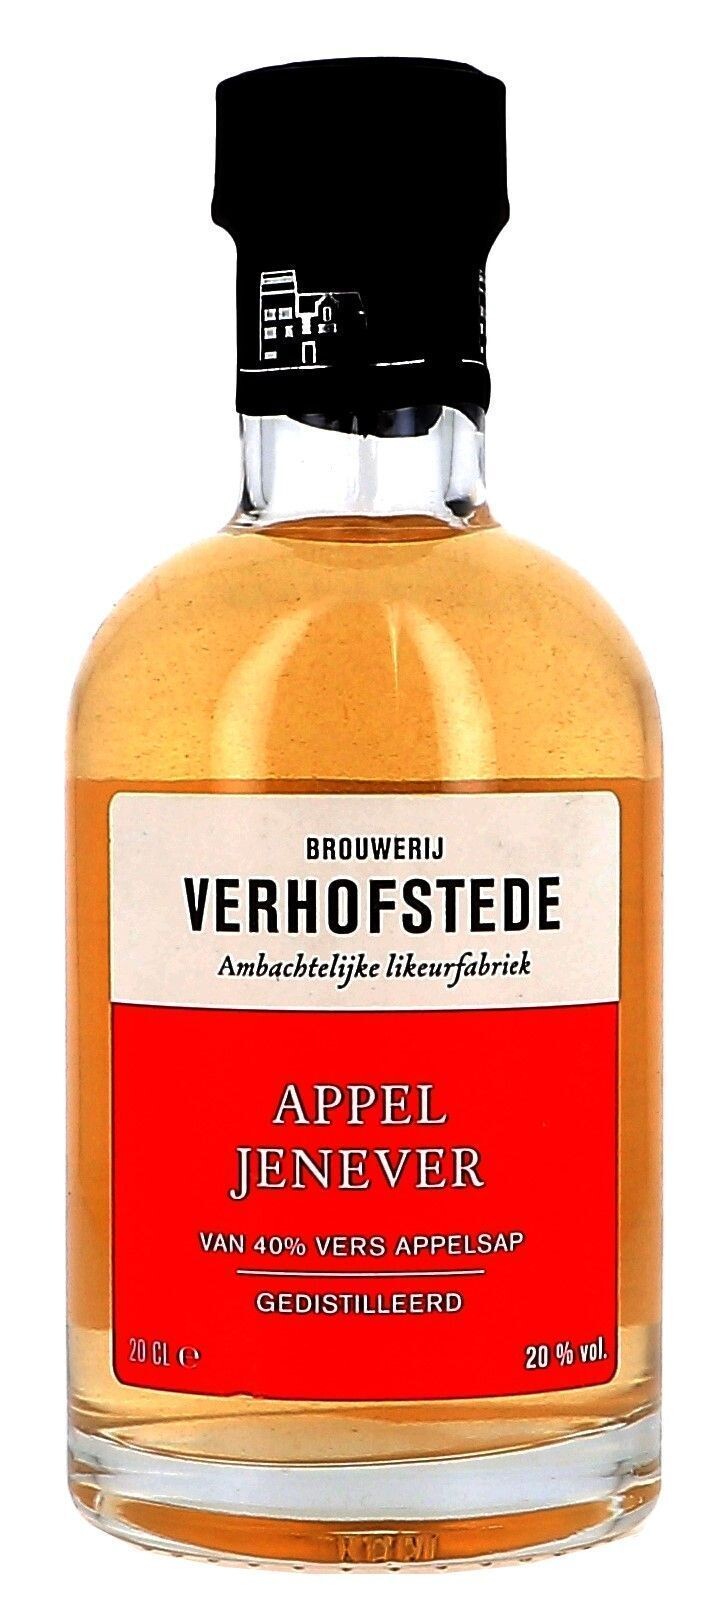 Apple Jenever Verhofstede 70cl 20% (Jenever)